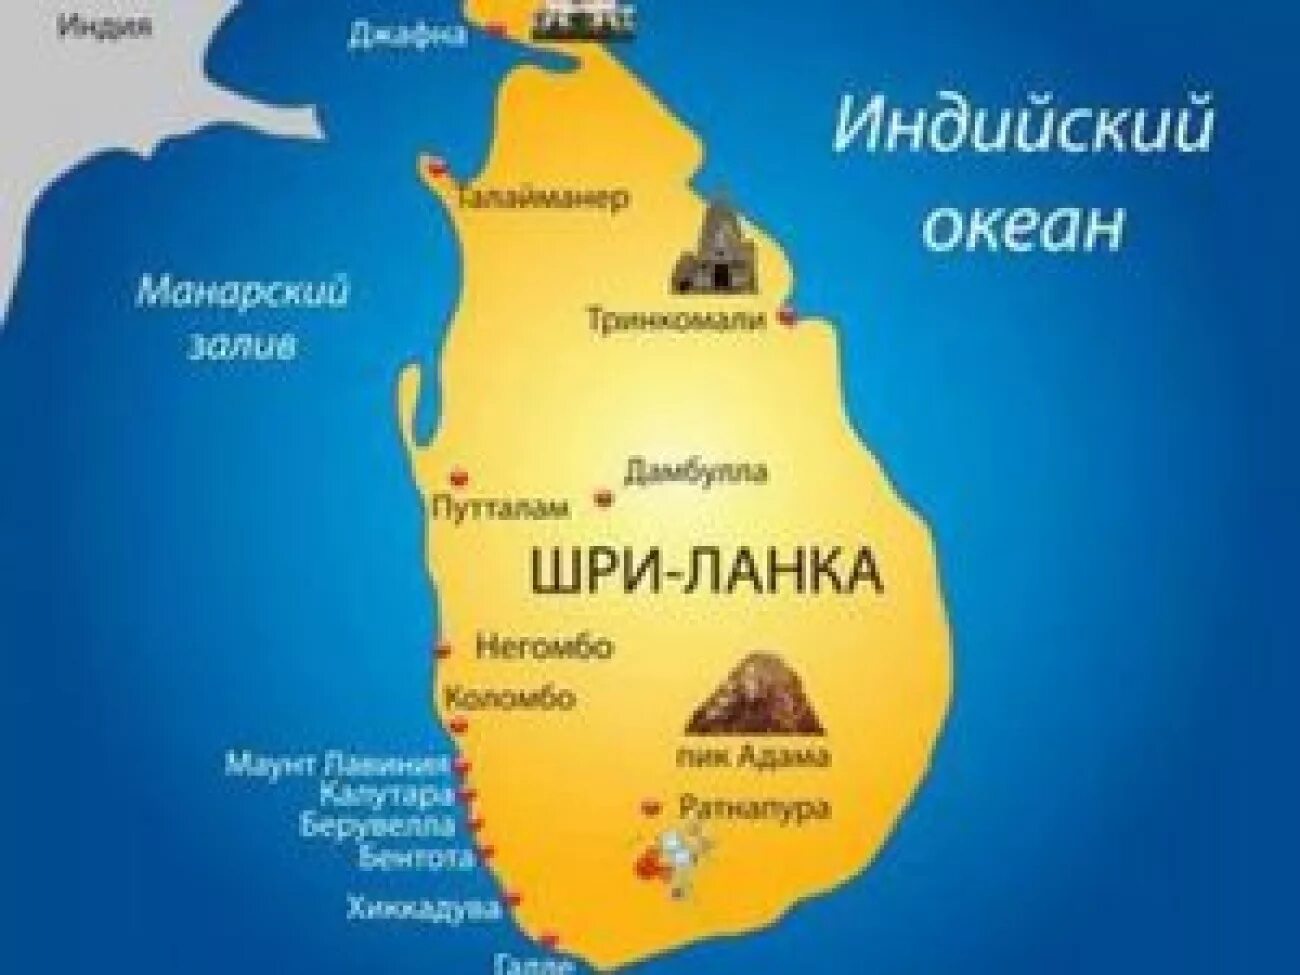 Достопримечательности шри ланки на карте. Шри Ланка на карте. Карта Шри Ланки. Остров Цейлон на карте. Карта Шри Ланки с курортами на русском языке.